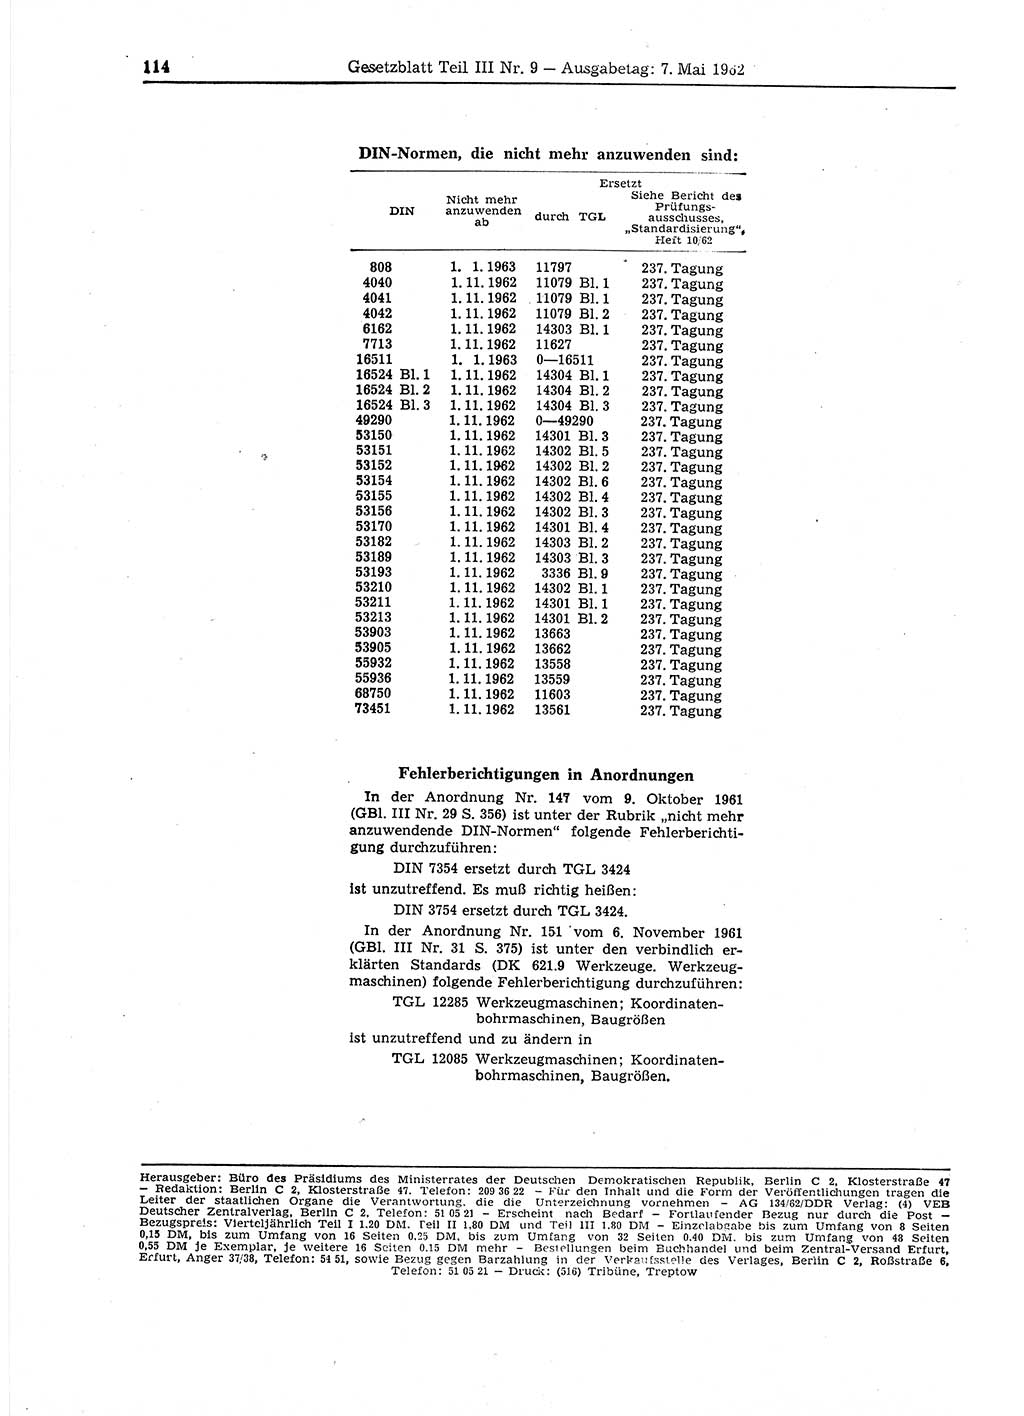 Gesetzblatt (GBl.) der Deutschen Demokratischen Republik (DDR) Teil ⅠⅠⅠ 1962, Seite 114 (GBl. DDR ⅠⅠⅠ 1962, S. 114)